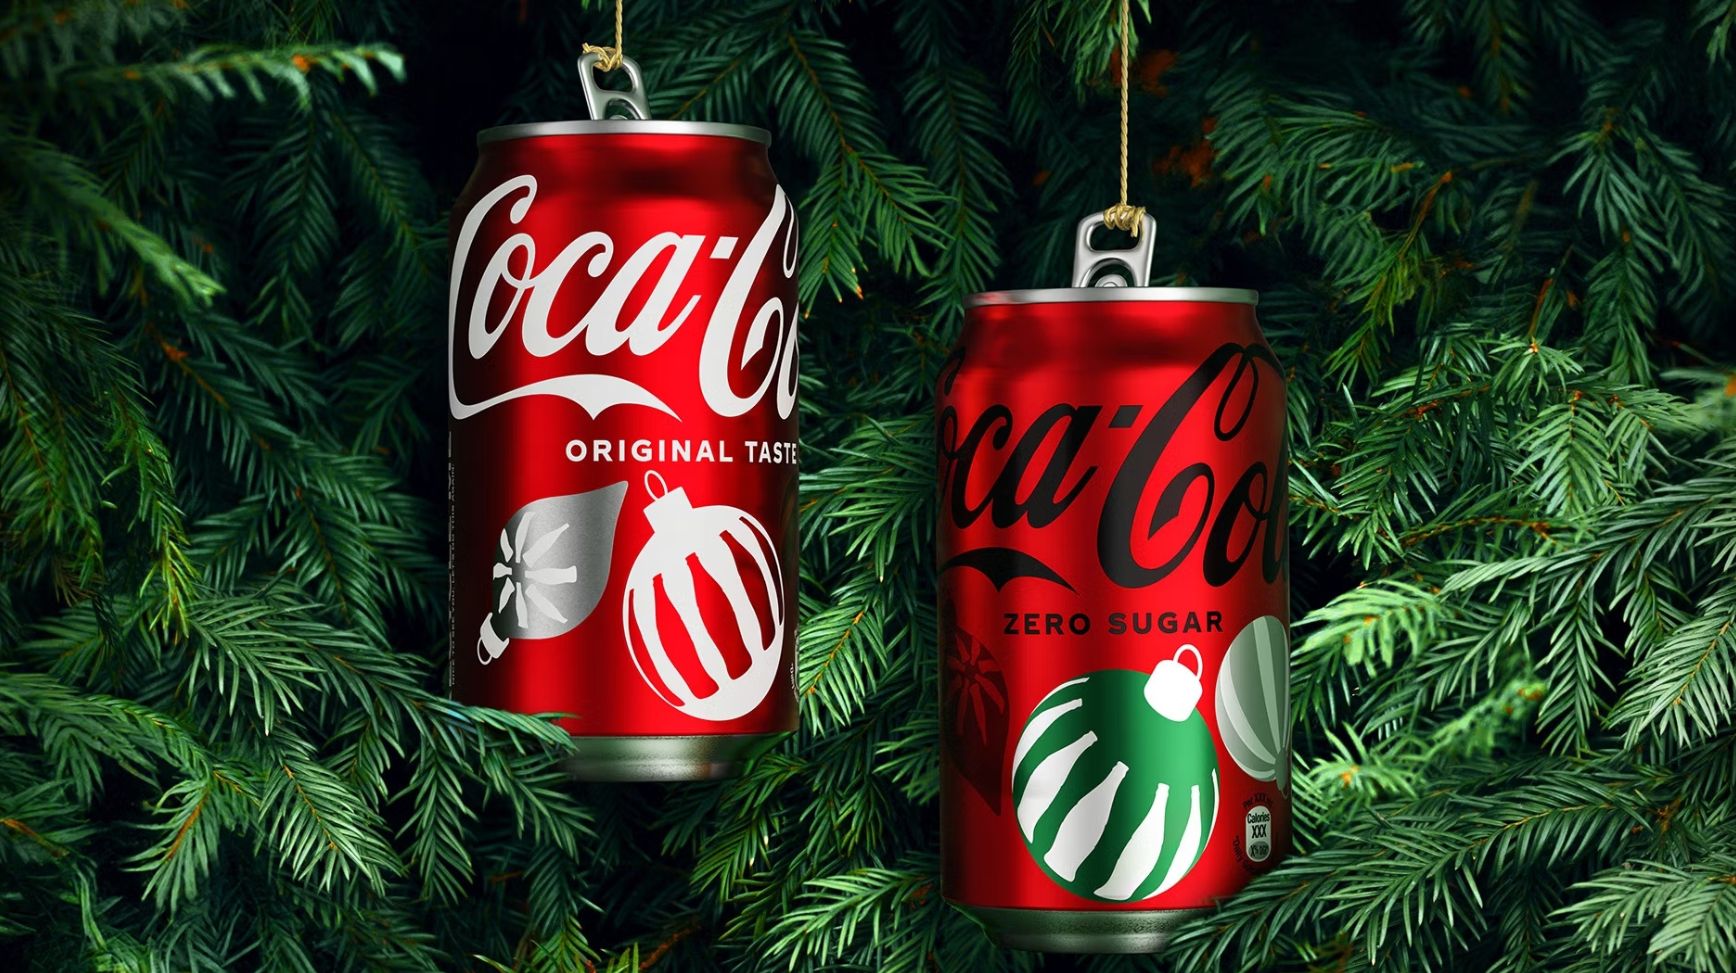 De kerstverpakking van Coca-Cola ontworpen door designbureau JKR